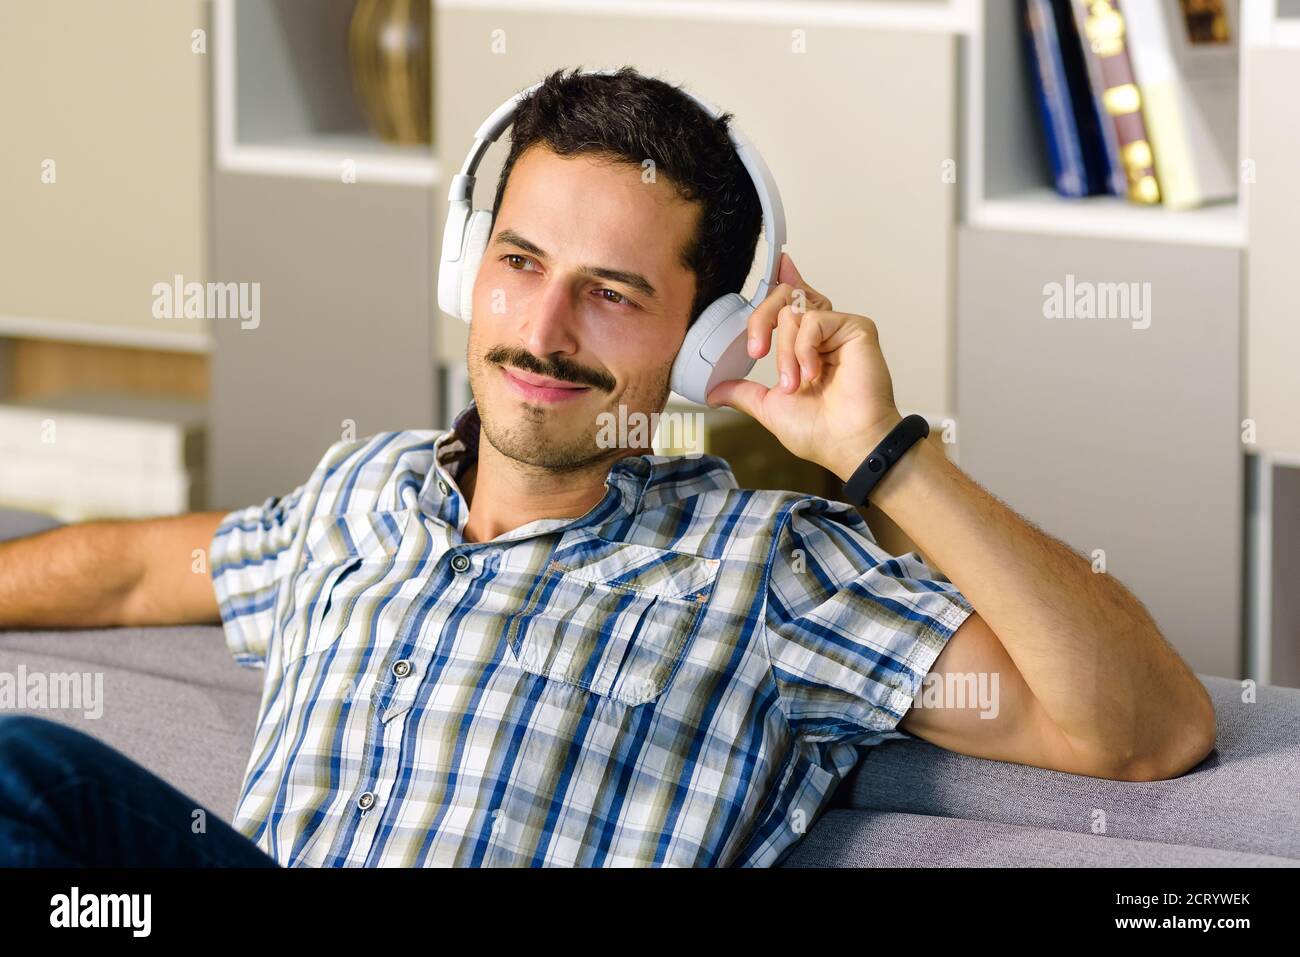 Mann entspannt Musik hören auf Stereo-Kopfhörer auf einem Bequemes Sofa zu Hause lächelnd mit Freude in einem Konzept Persönliche Unterhaltung Stockfoto